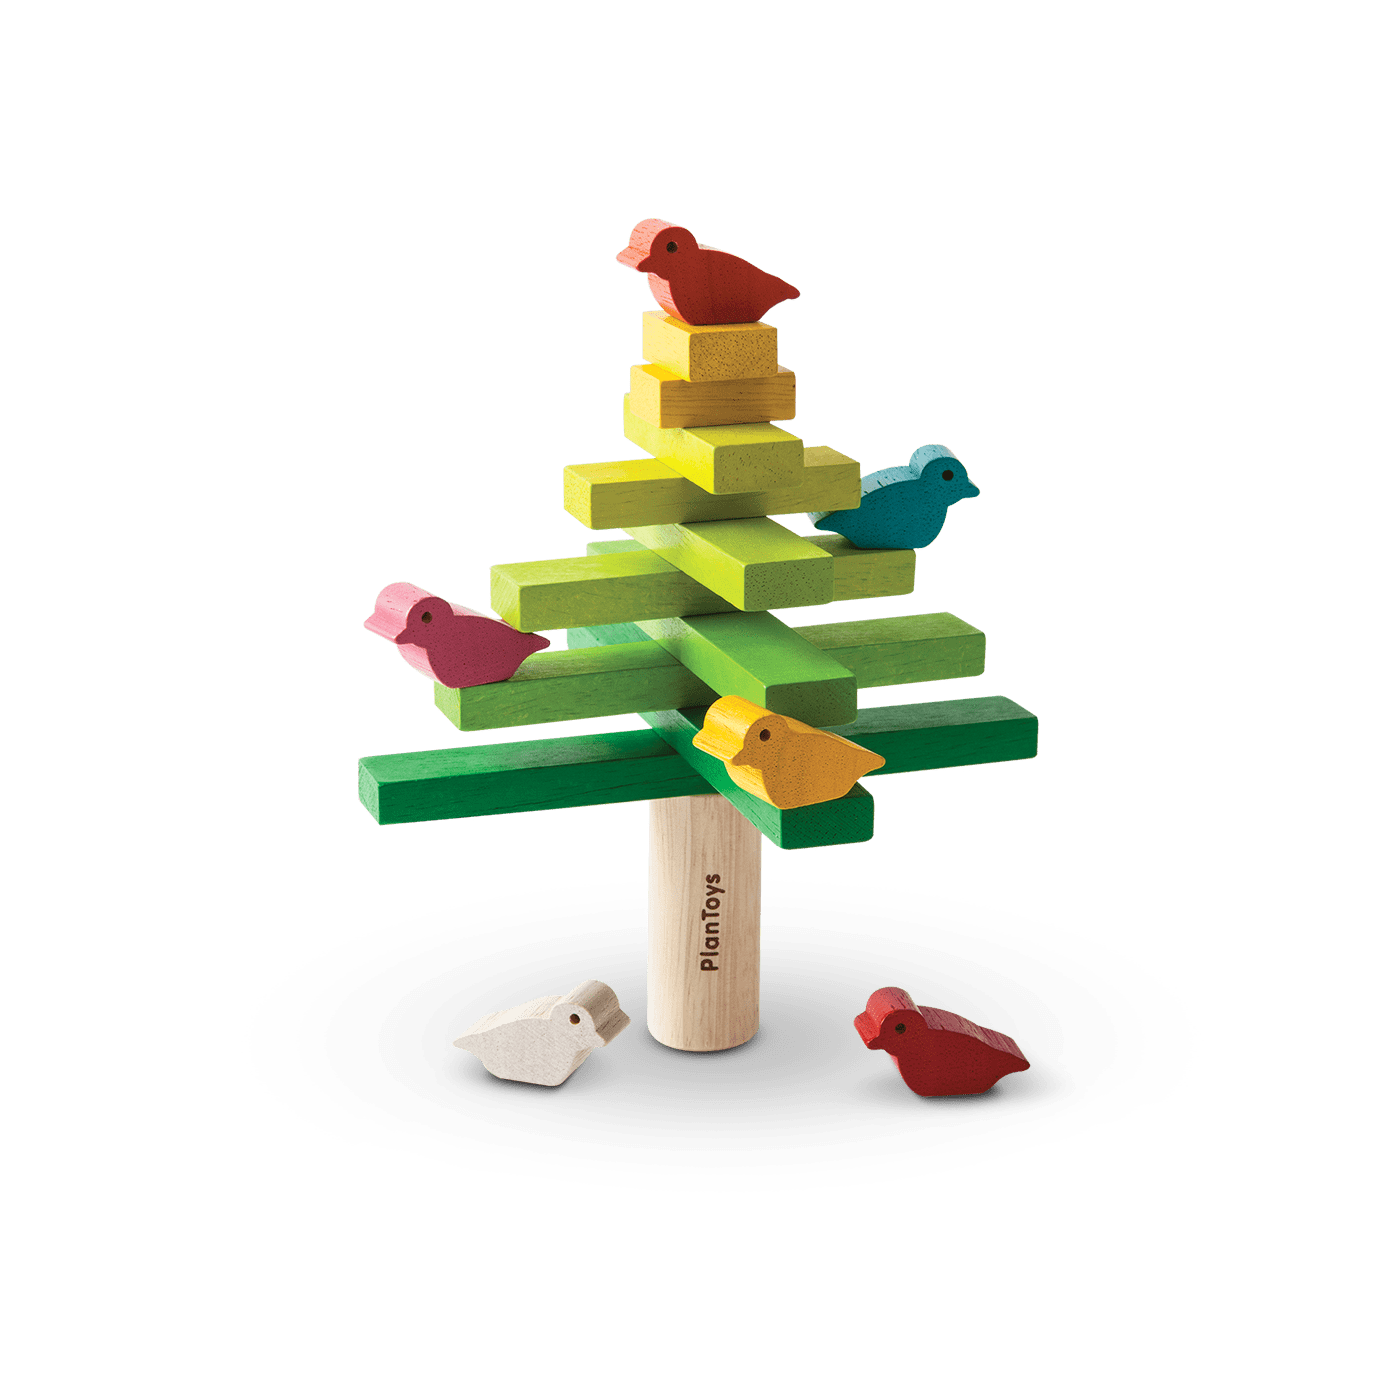 Balancing Tree Game by Plan Toys